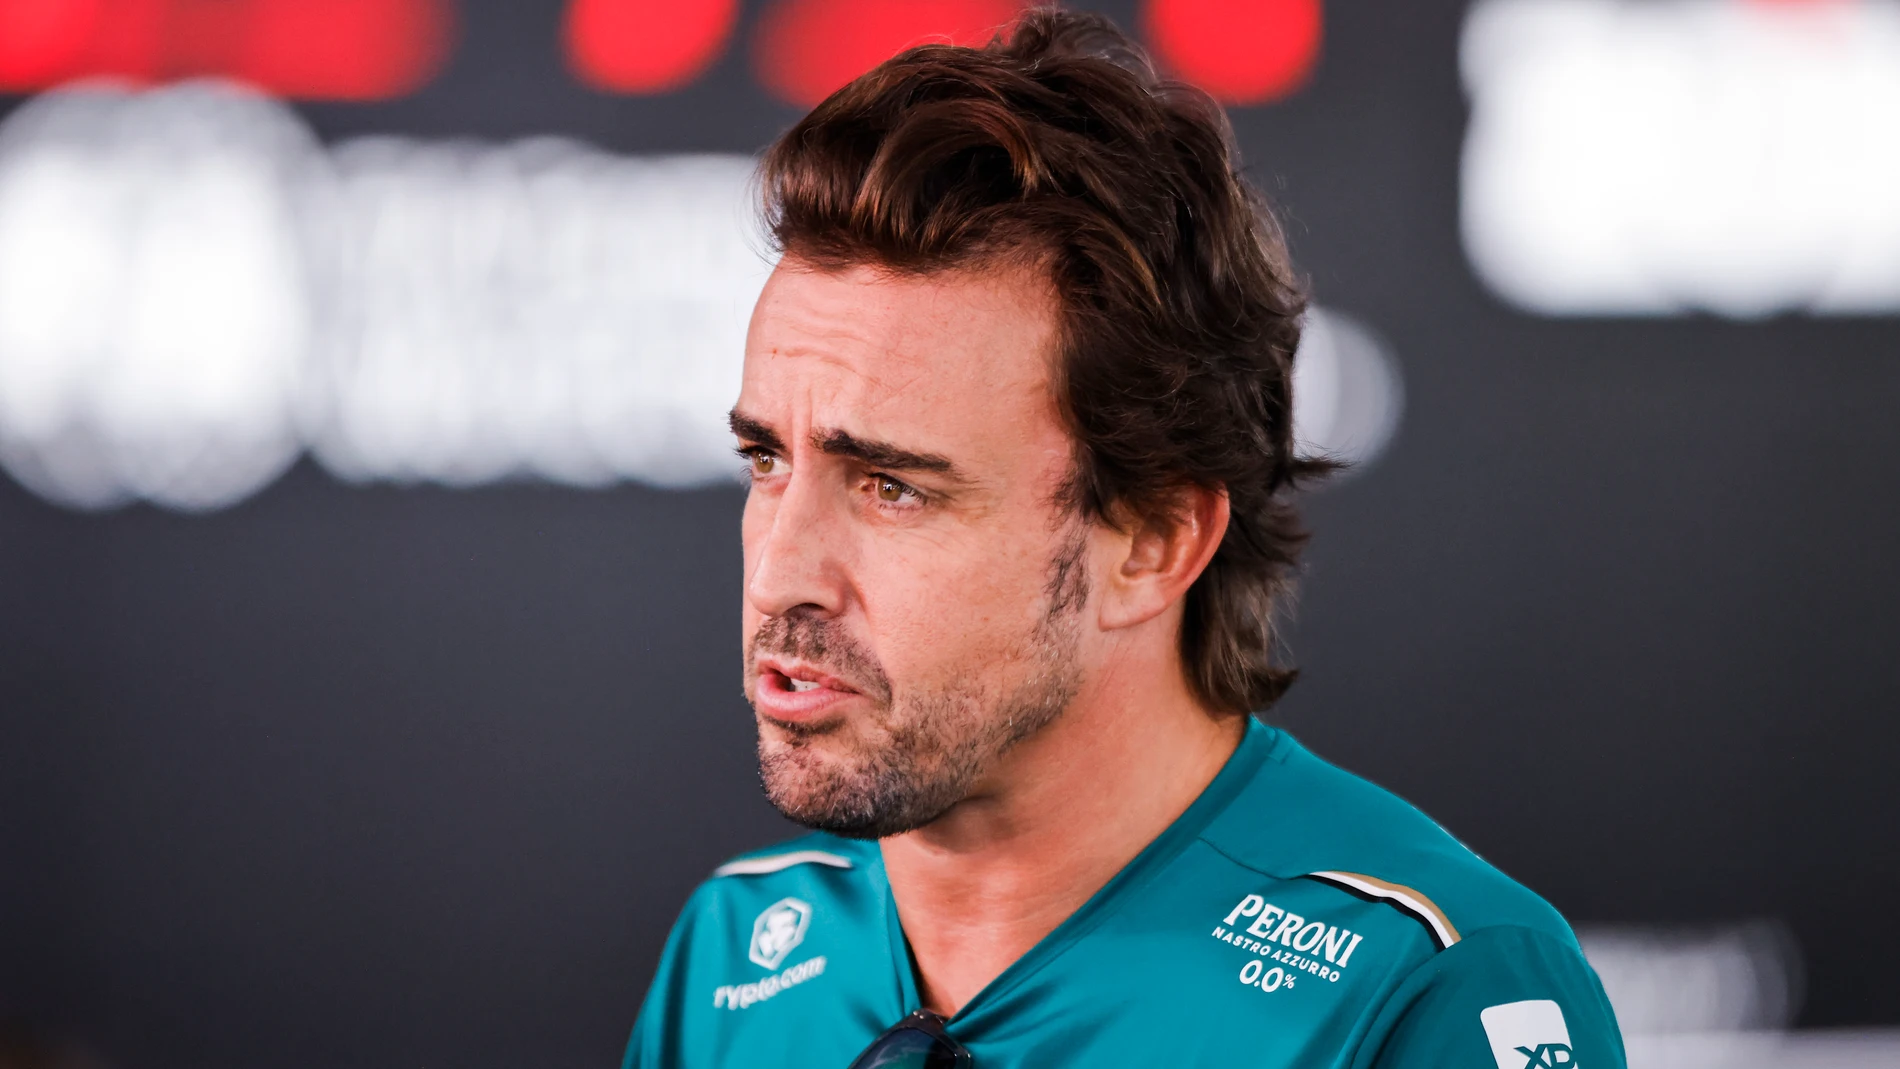 Fernando Alonso desata la fiebre en Aston Martin: agotados todos sus  productos oficiales